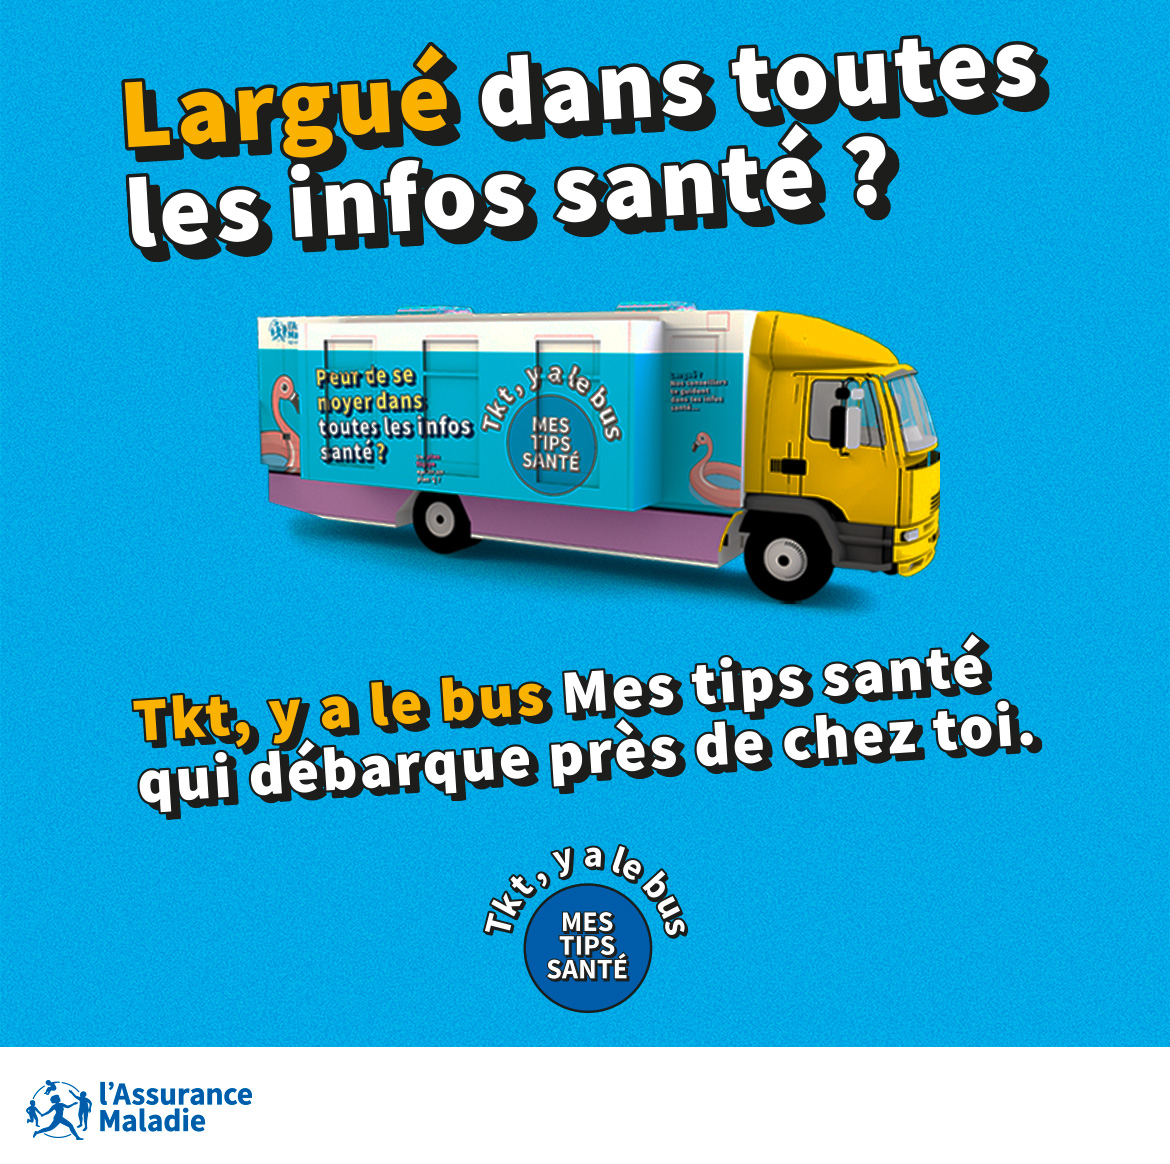 Le bus "Mes tips santé" fait étape à Reims